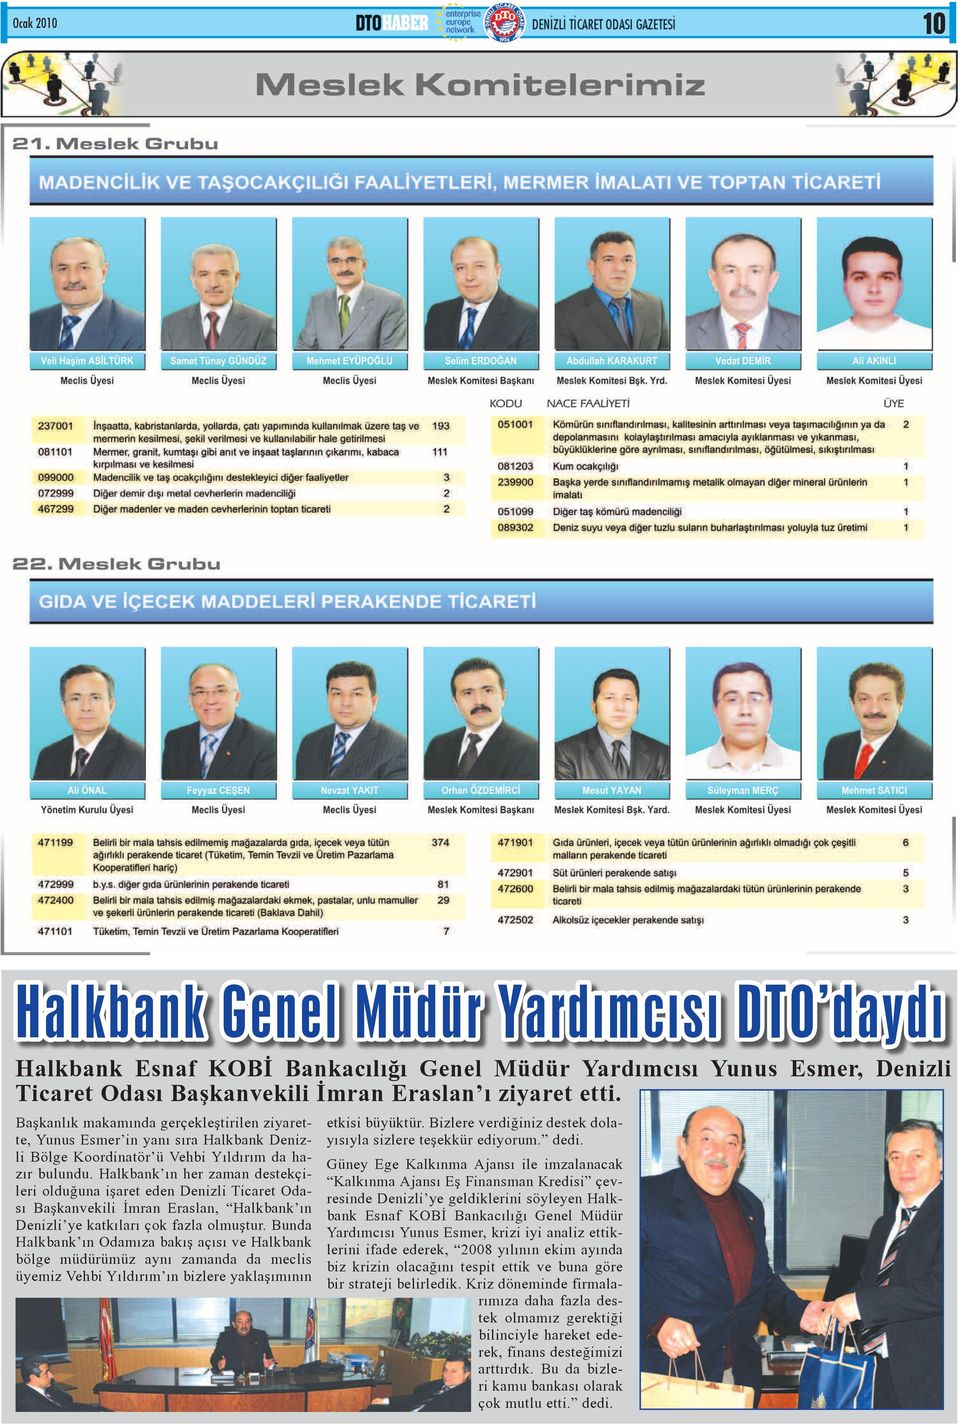 Halkbank ın her zaman destekçileri olduğuna işaret eden Denizli Ticaret Odası Başkanvekili İmran Eraslan, Halkbank ın Denizli ye katkıları çok fazla olmuştur.